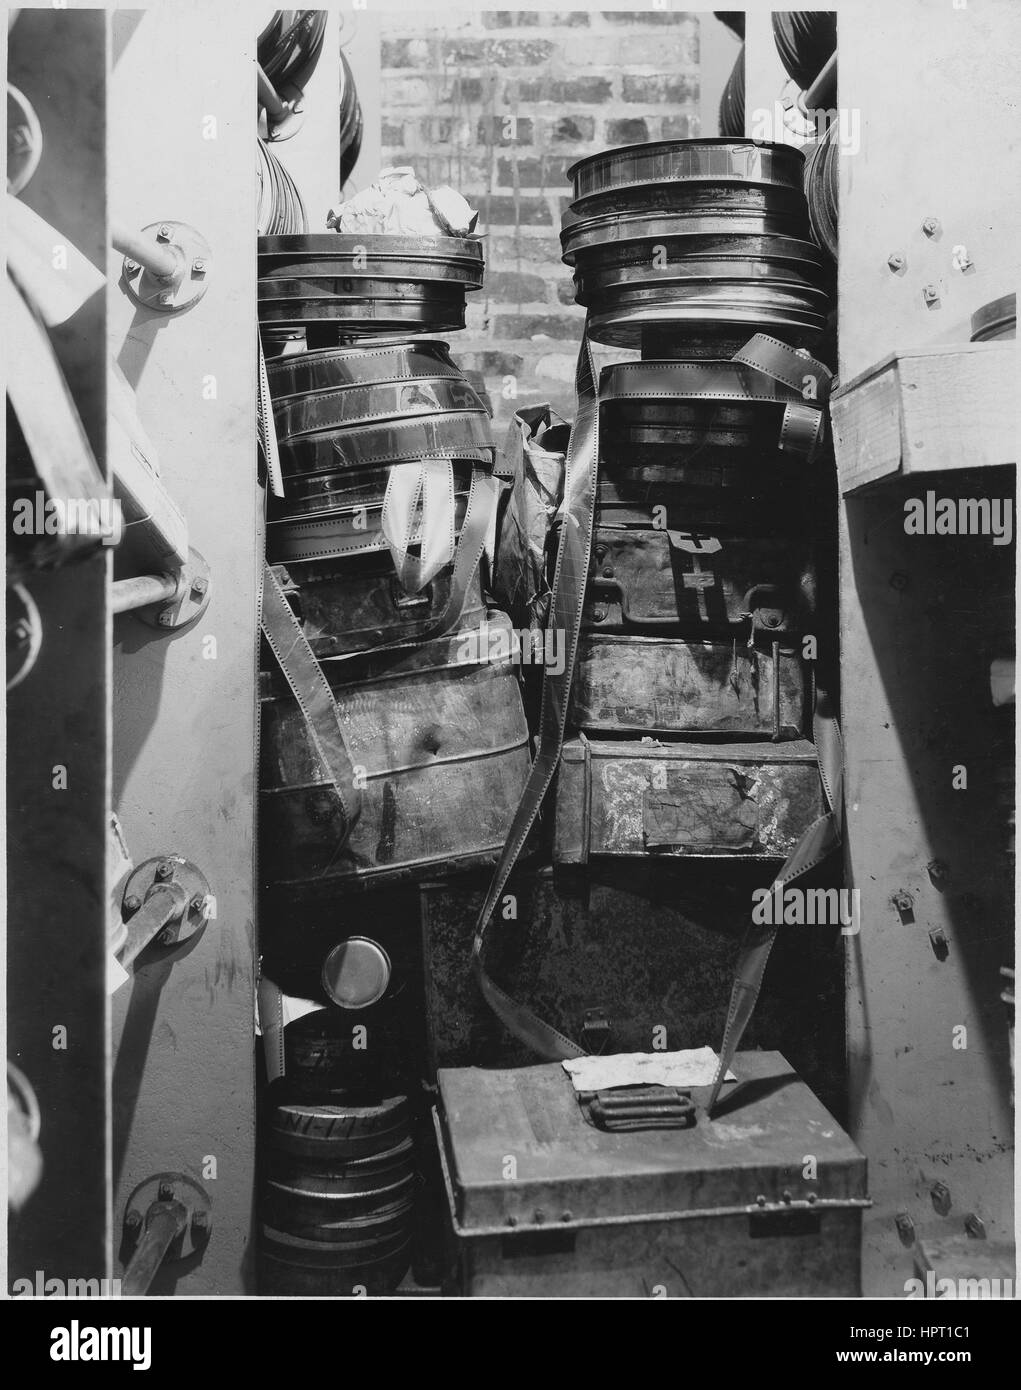 Pellicola di nitrato memorizzati in un archivio di mattoni prima dell'adesione per gli archivi nazionali, Washington DC, 9 agosto 1935. Foto Stock